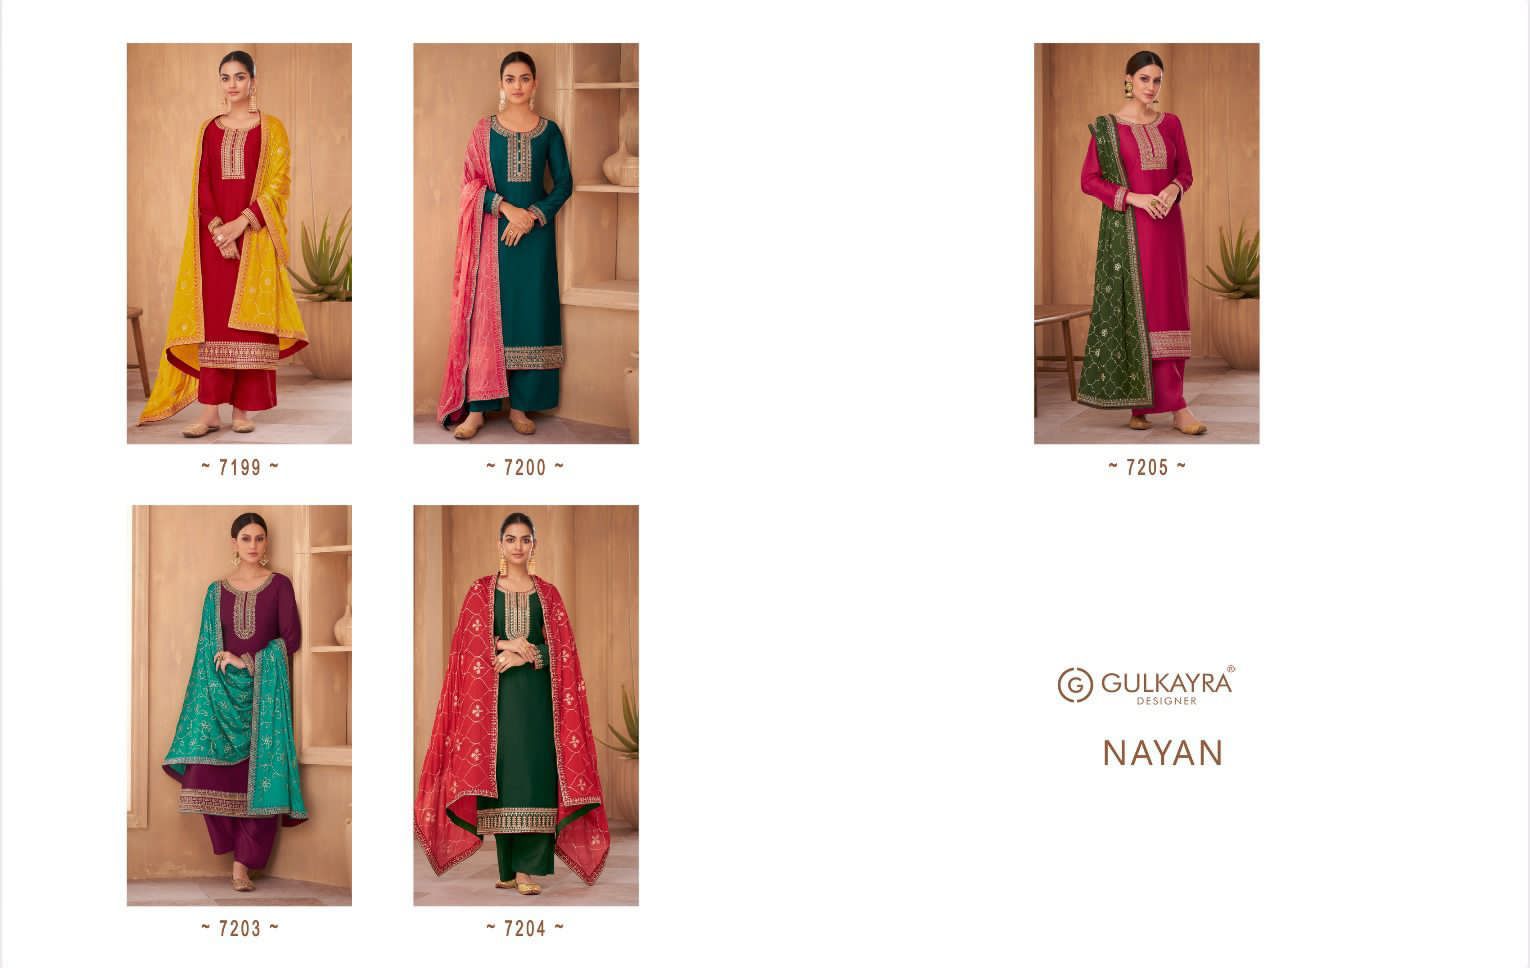 Gulkayra Designer Nayan 7199-7205